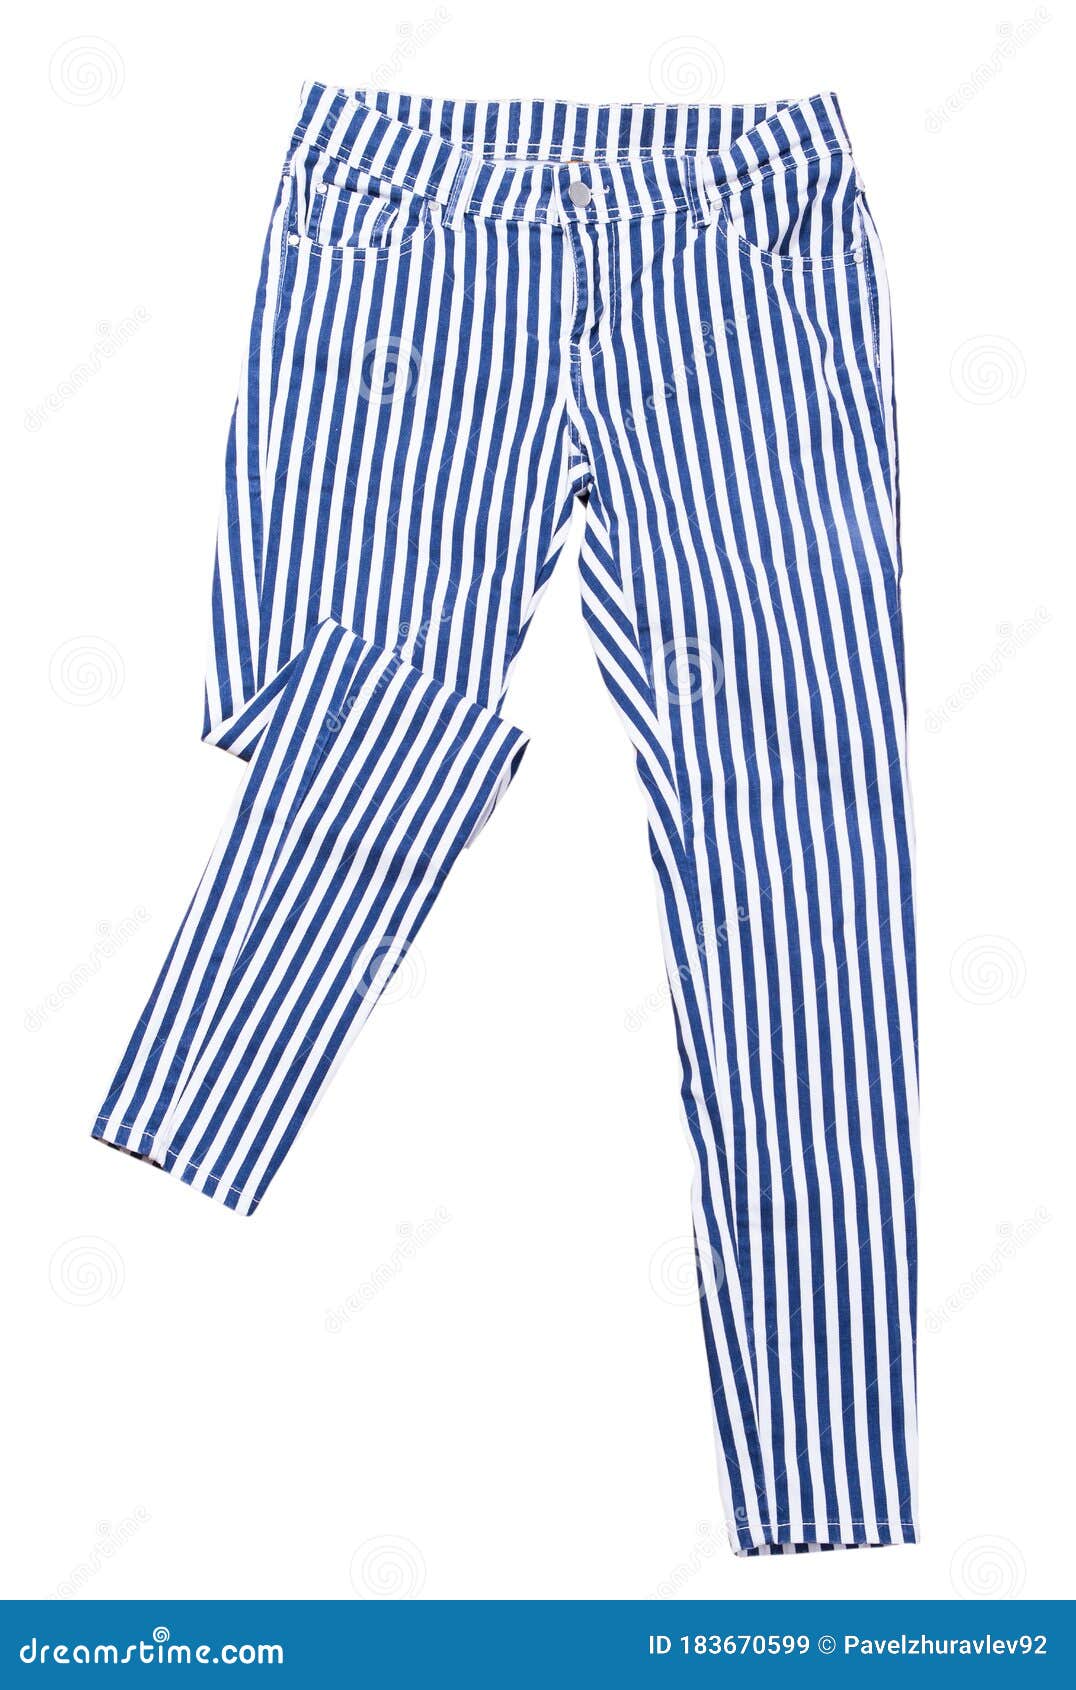 Pantalones Aislados En Pantalones De Rayas Blancas Arriba Pantalones Blancos Con Aislamiento Azul Y Imagen de archivo - Imagen de aislamiento, ropa: 183670599